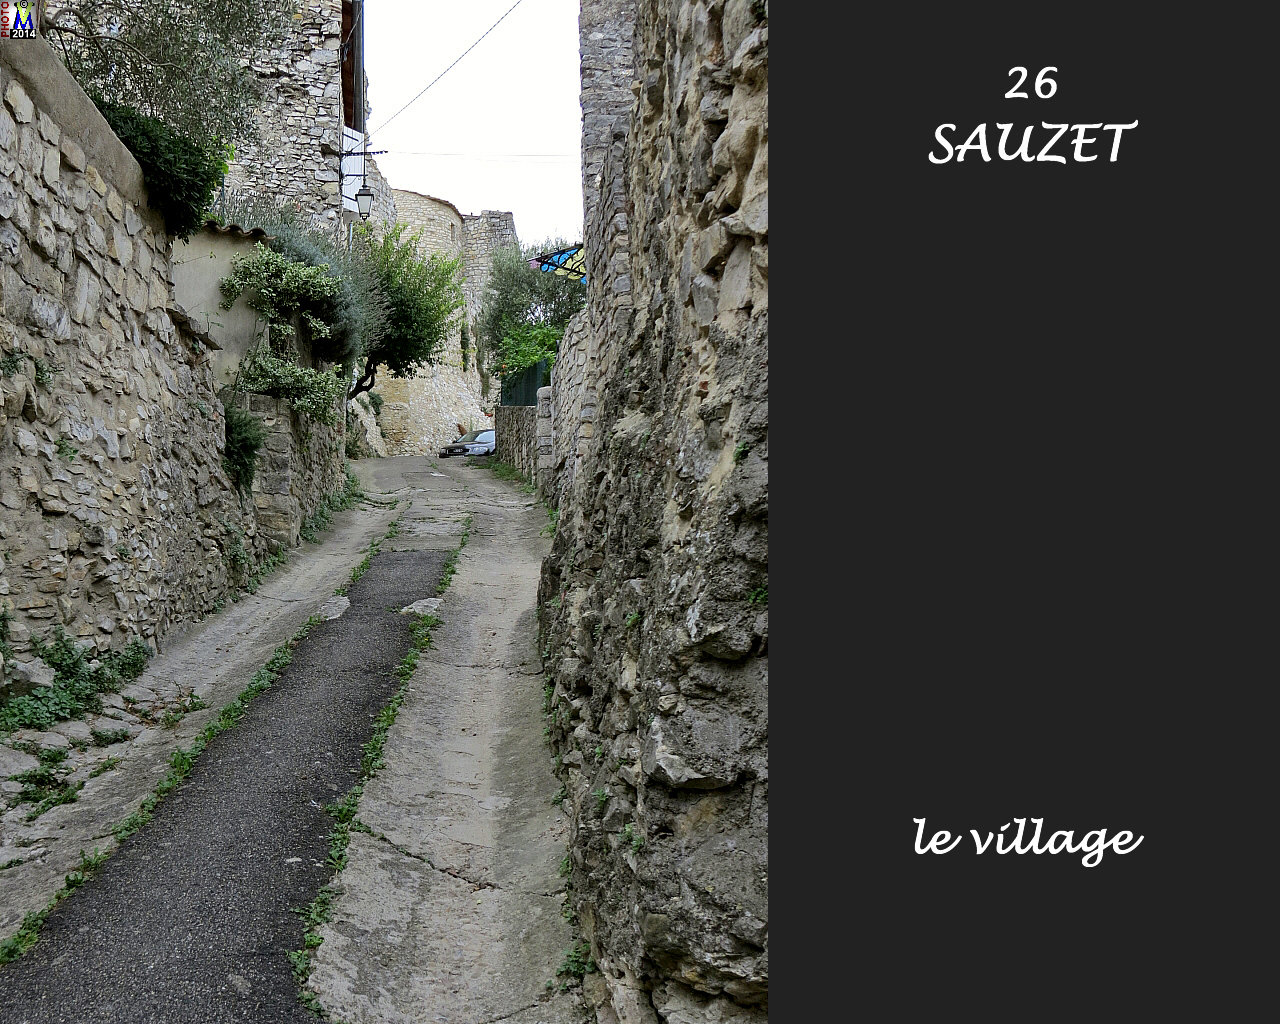 26SAUZET_village_136.jpg